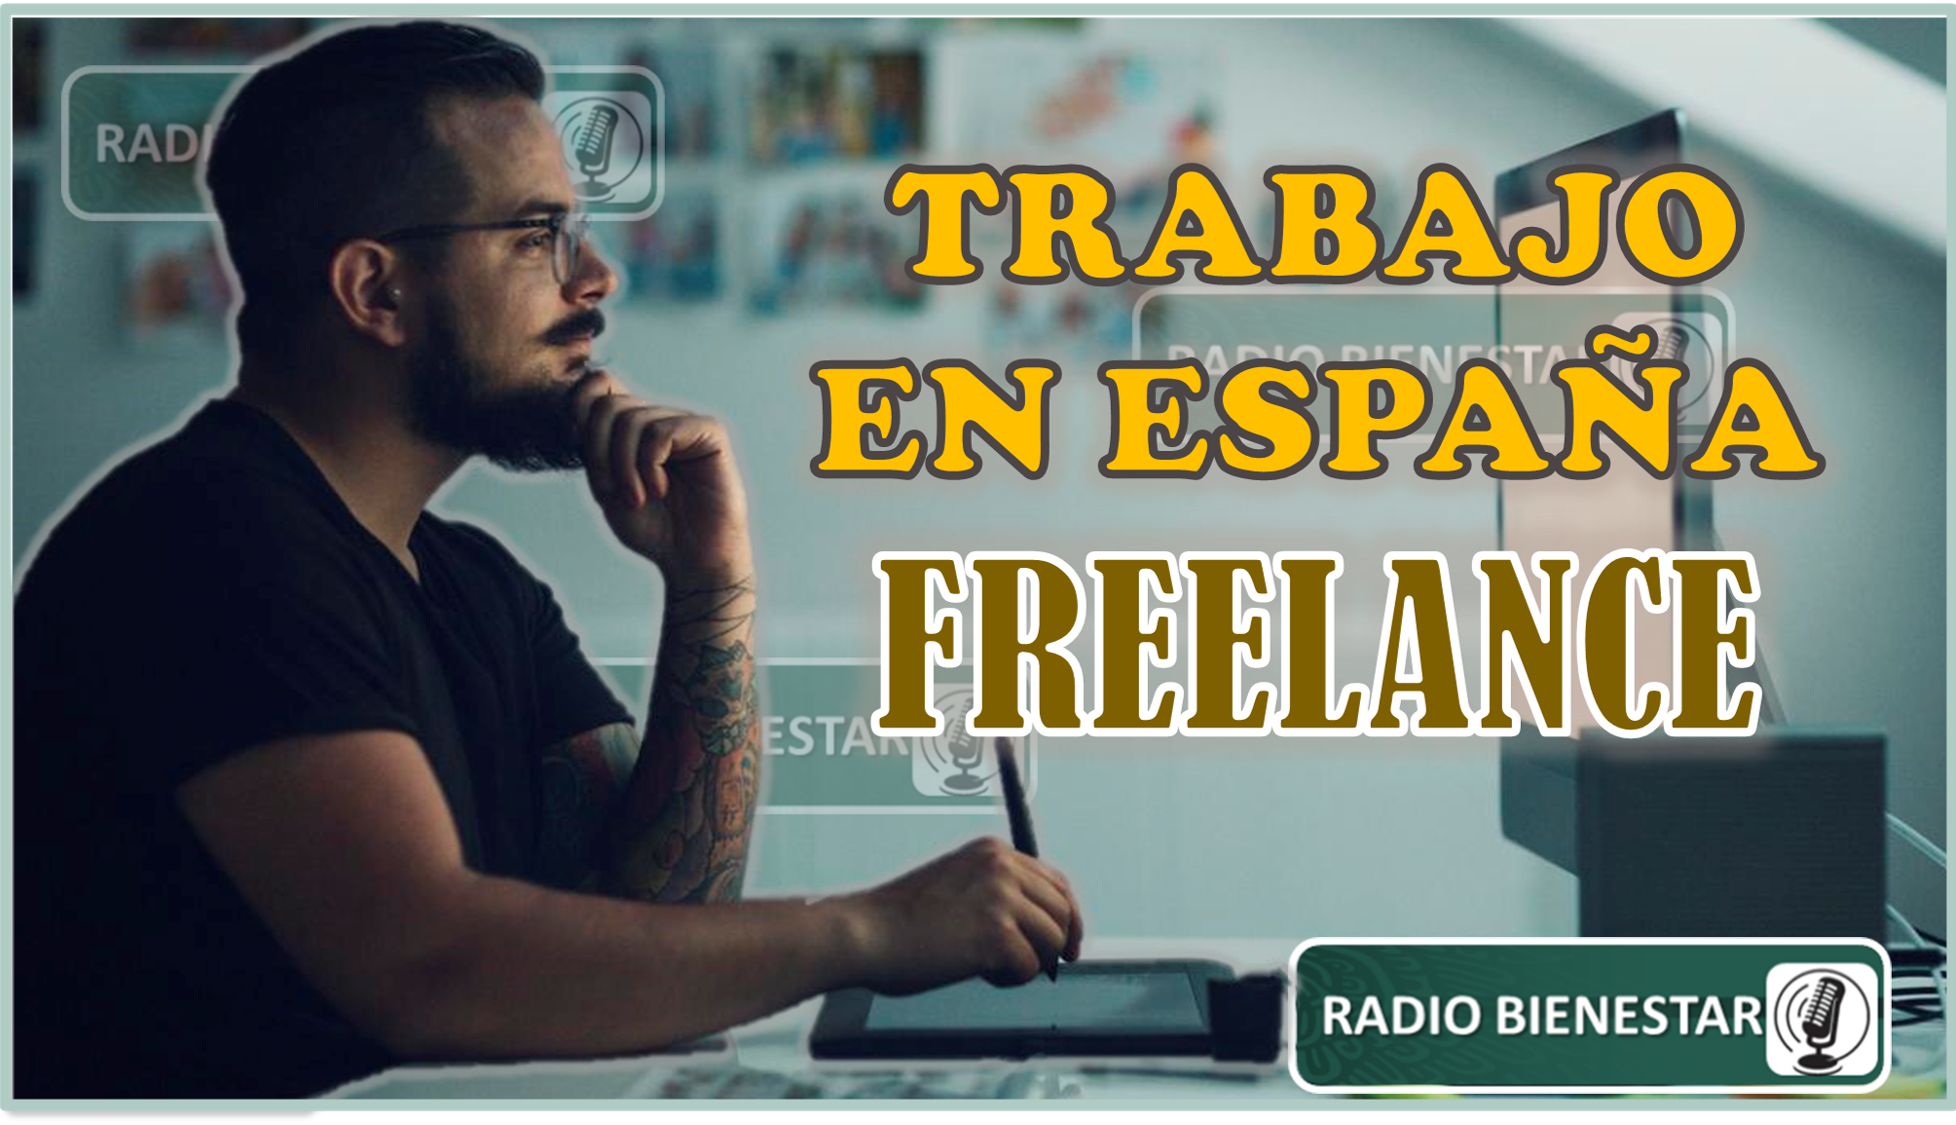 Trabajo en España freelance